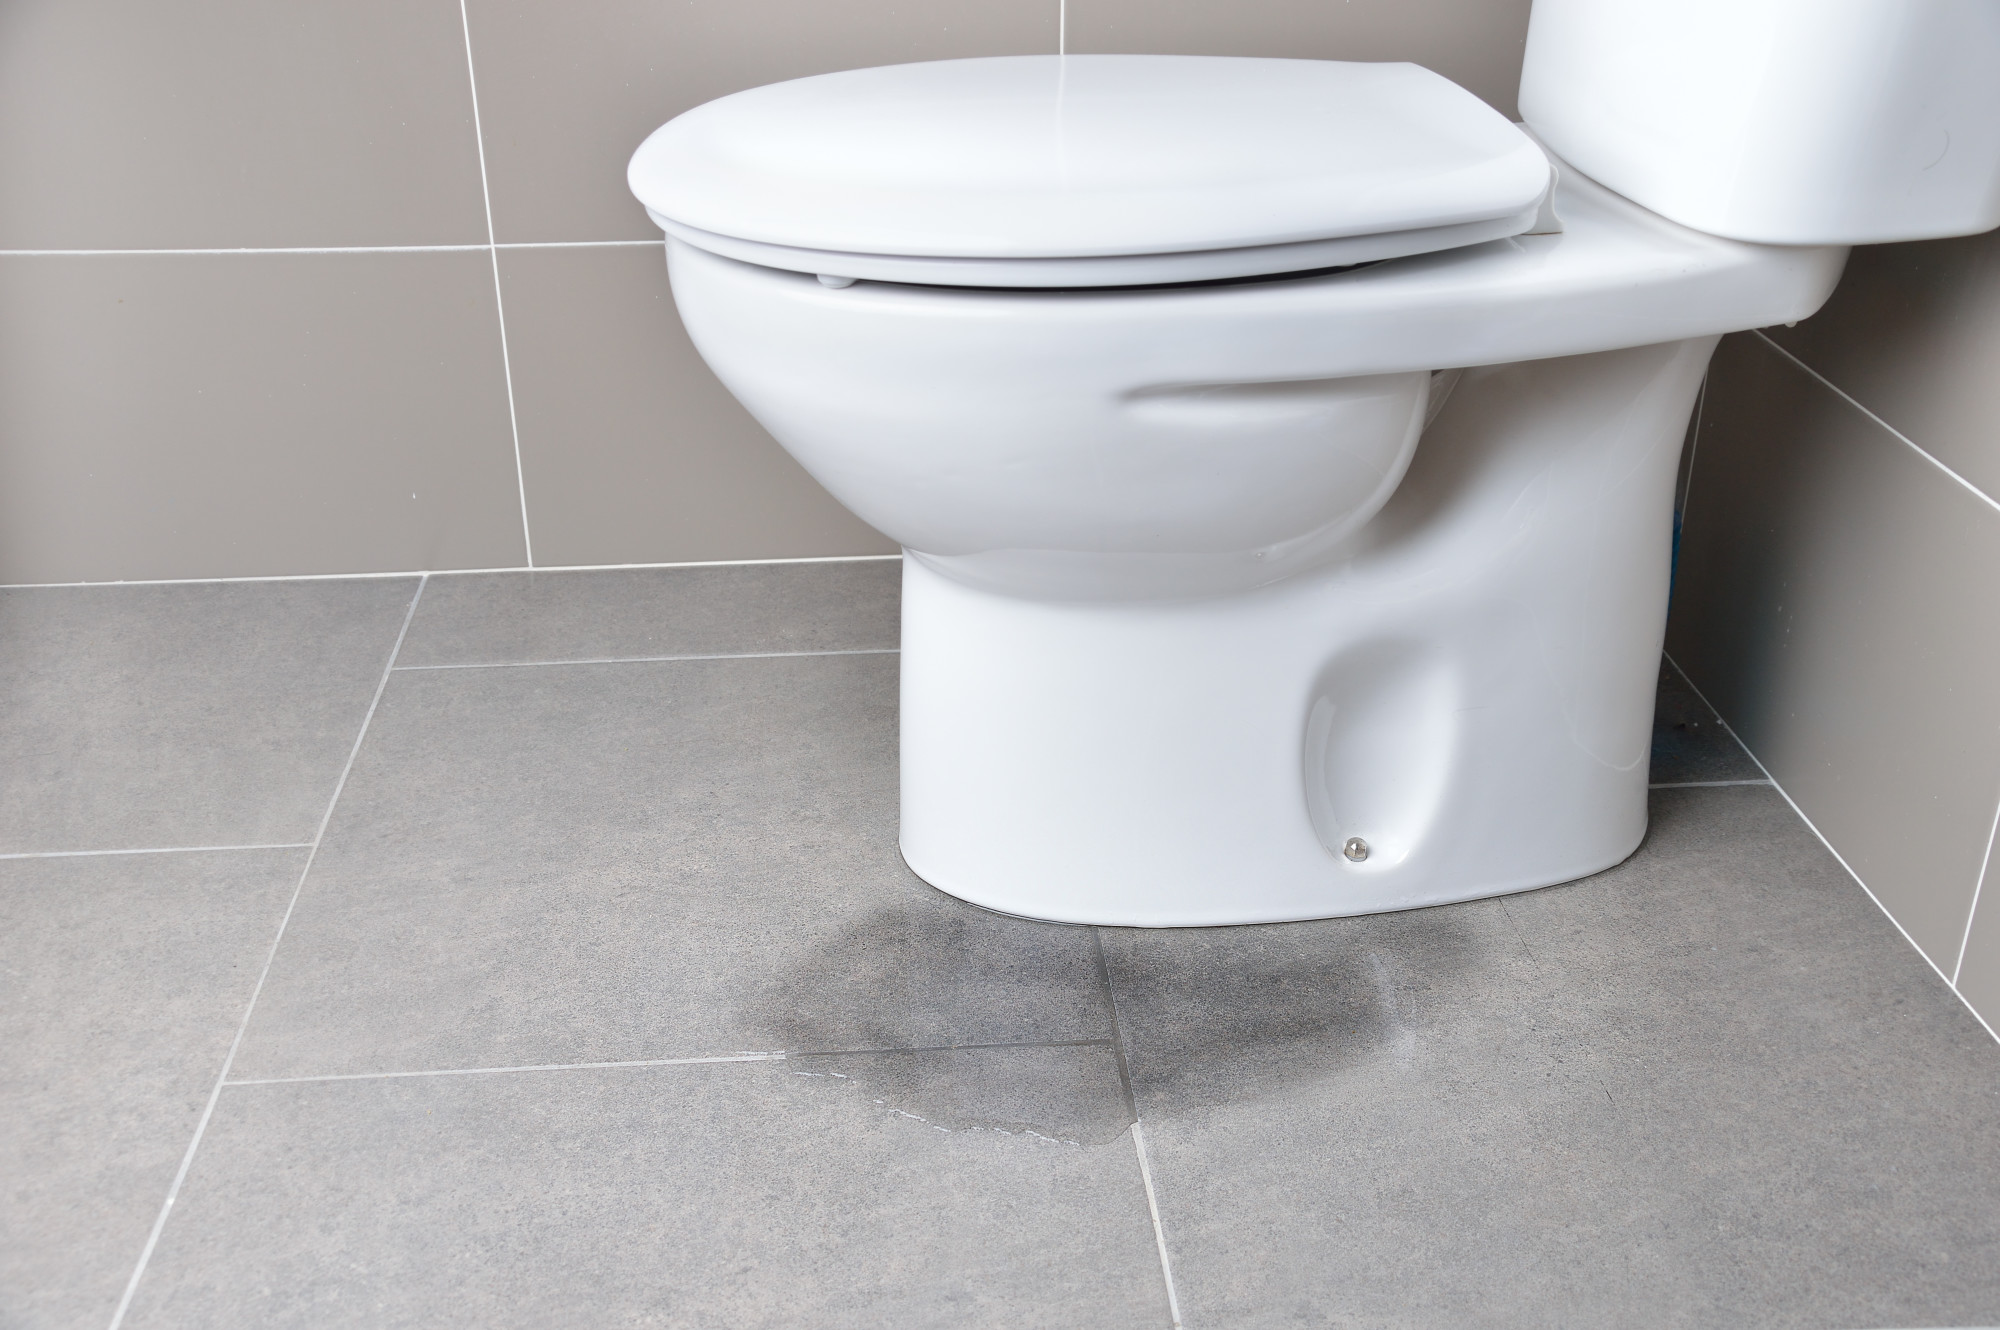 Causes of Toilet Leaks